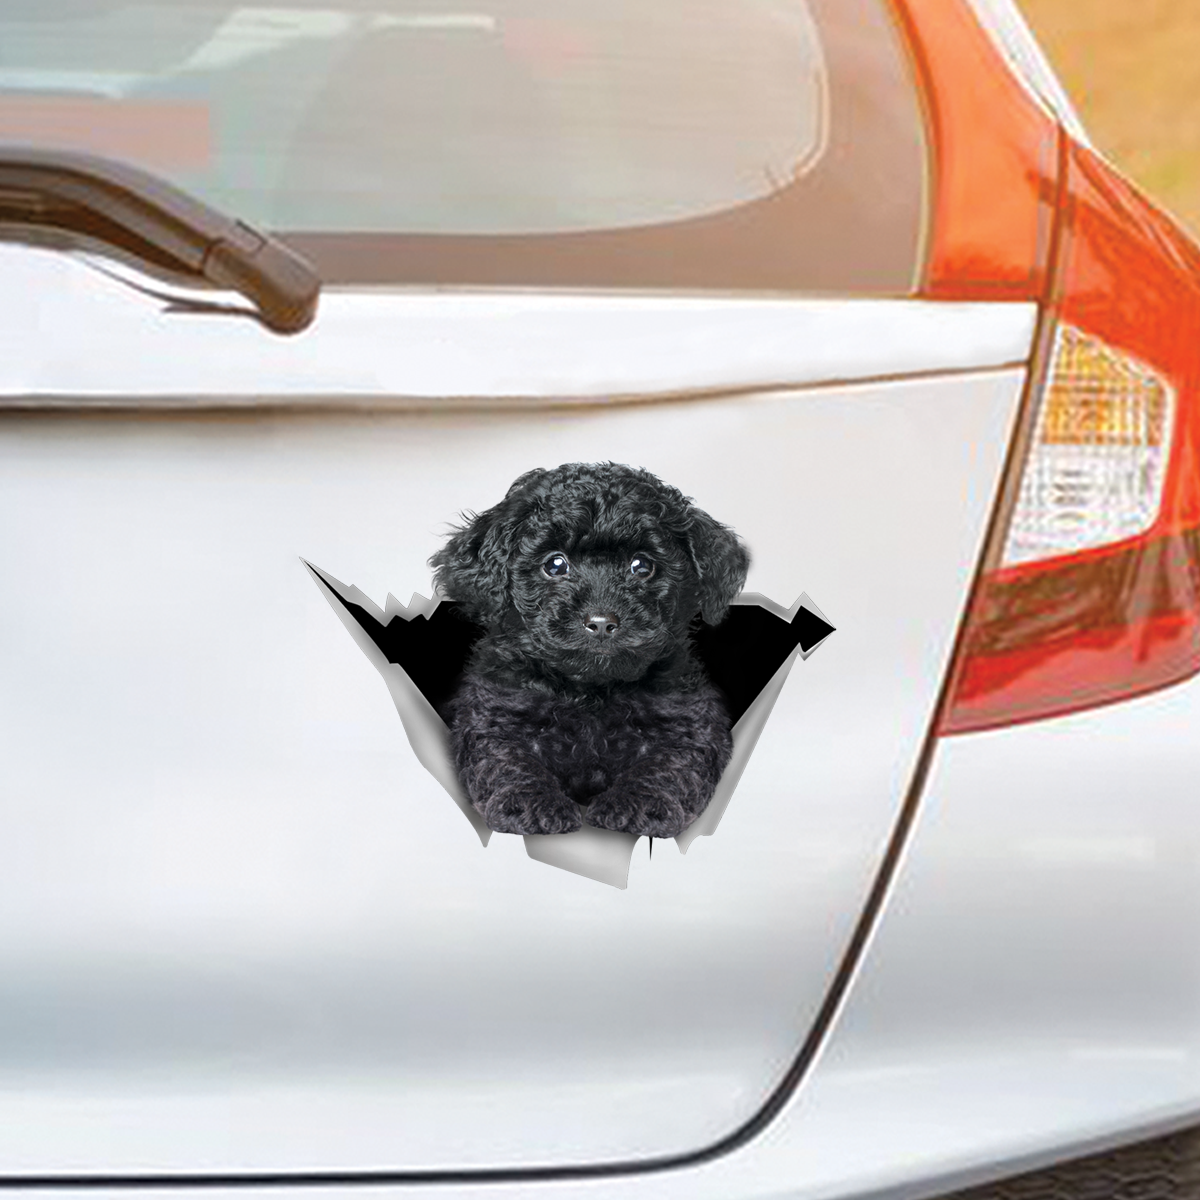 We Like Riding In Cars - Poodle Car/ Door/ Fridge/ Laptop Sticker V3